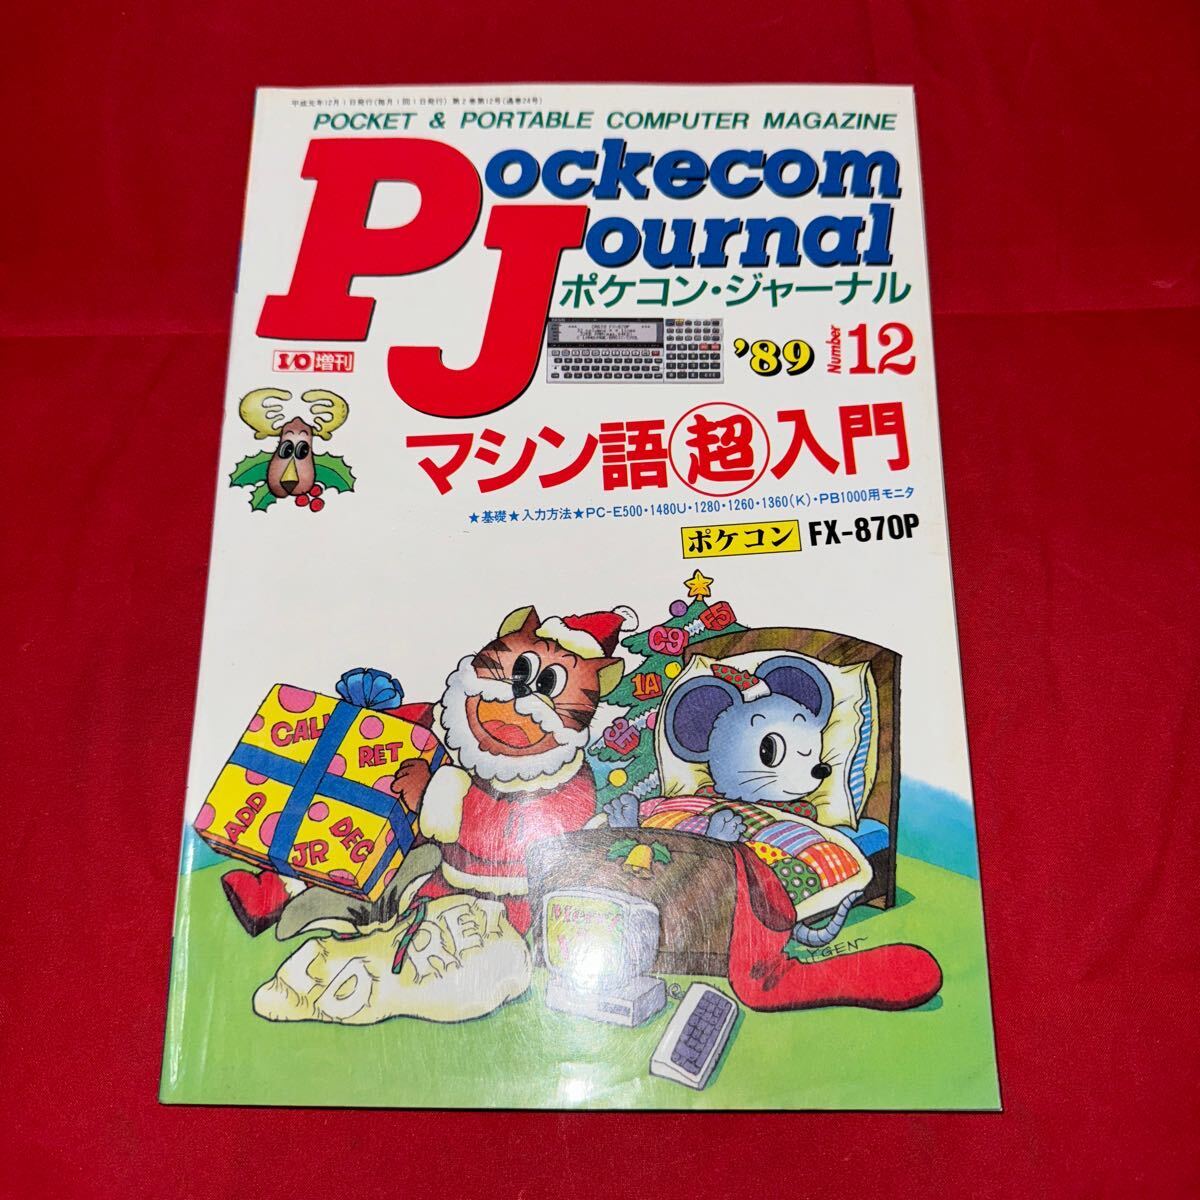 工学社 月刊ポケコンジャーナル 1989年(平成元年) 12月号Pockecom Journal の画像1